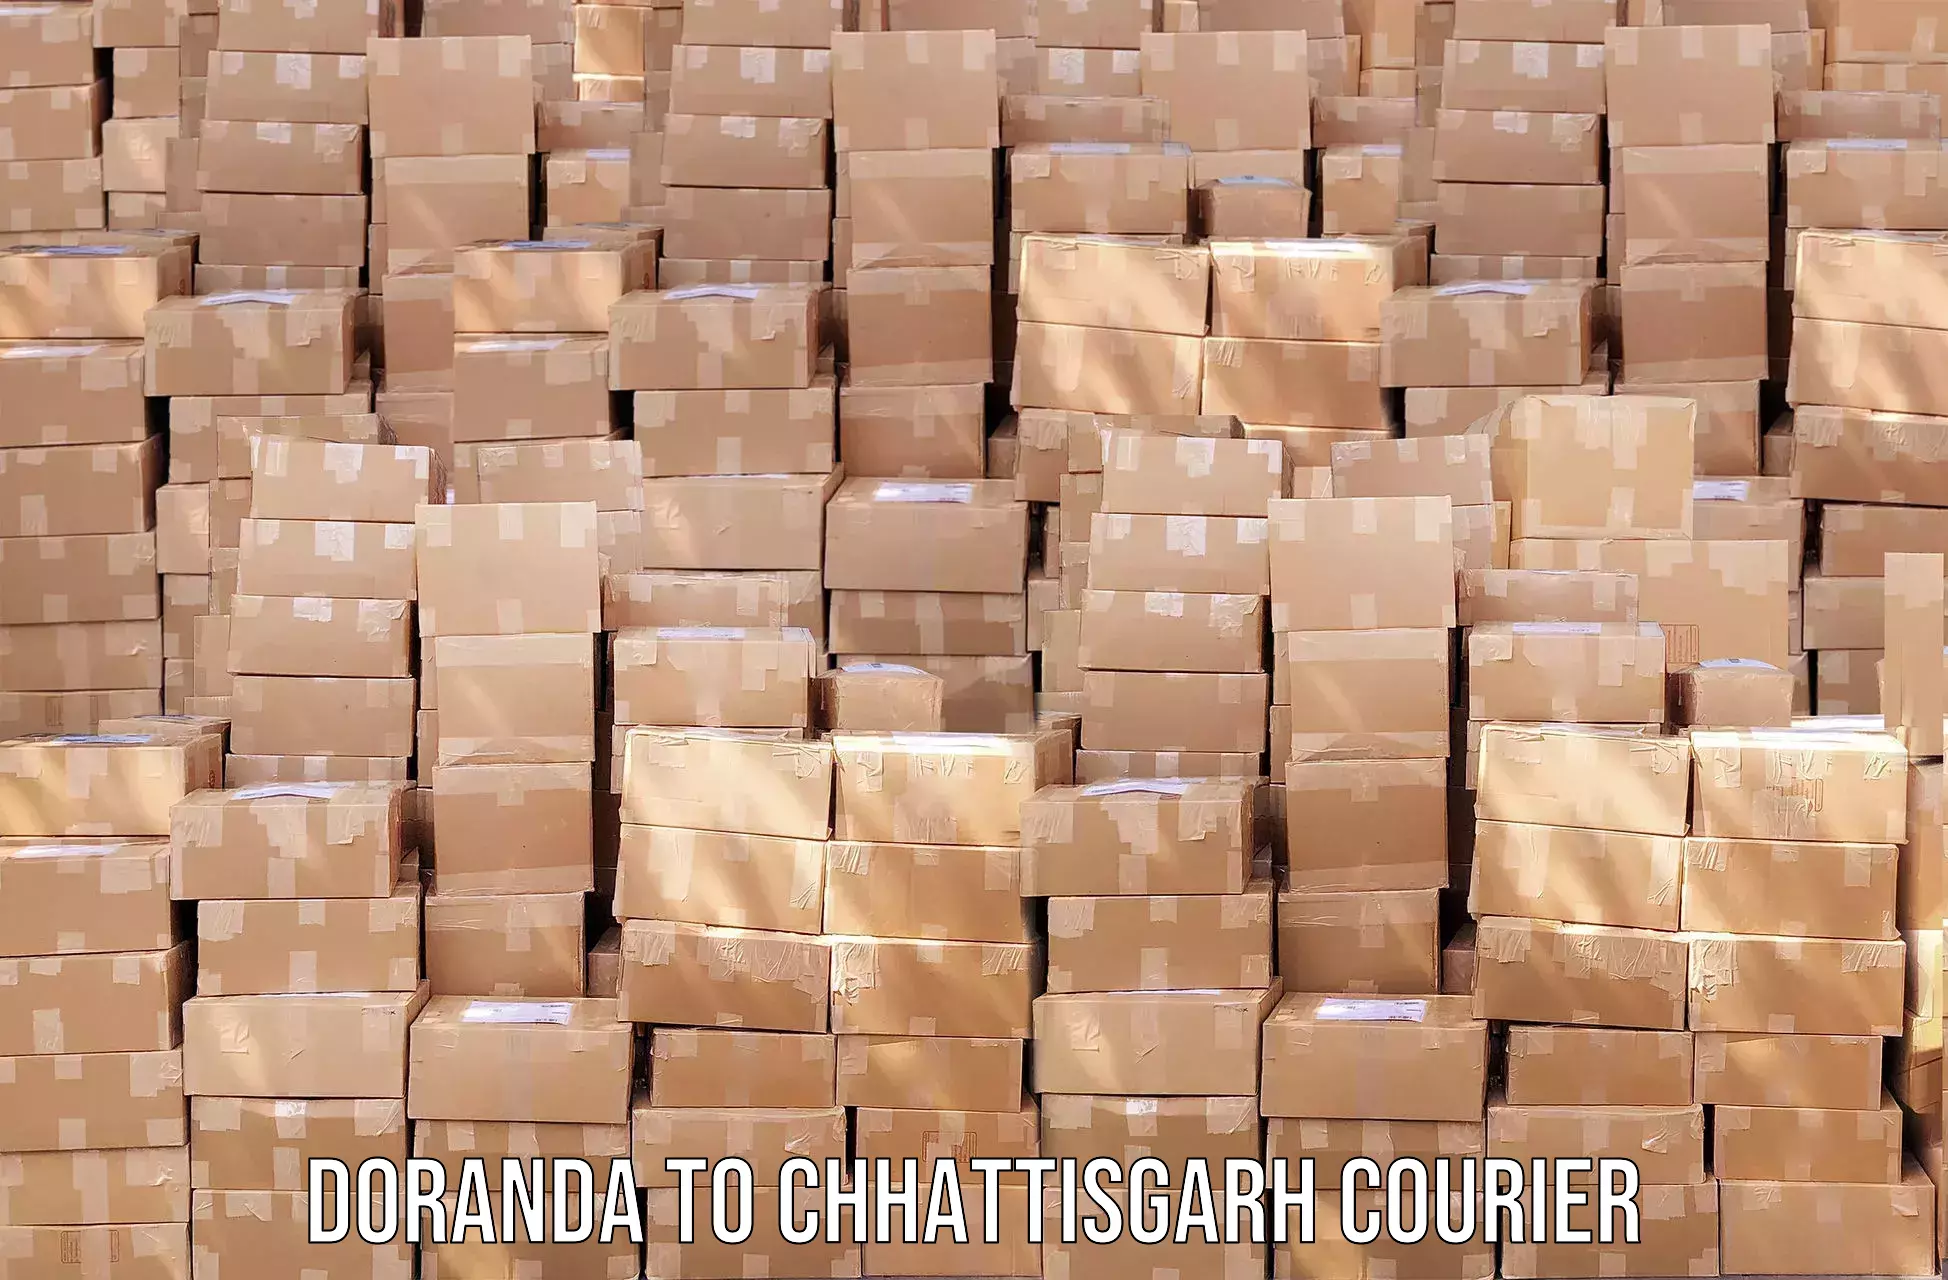 Efficient order fulfillment in Doranda to Wadrafnagar